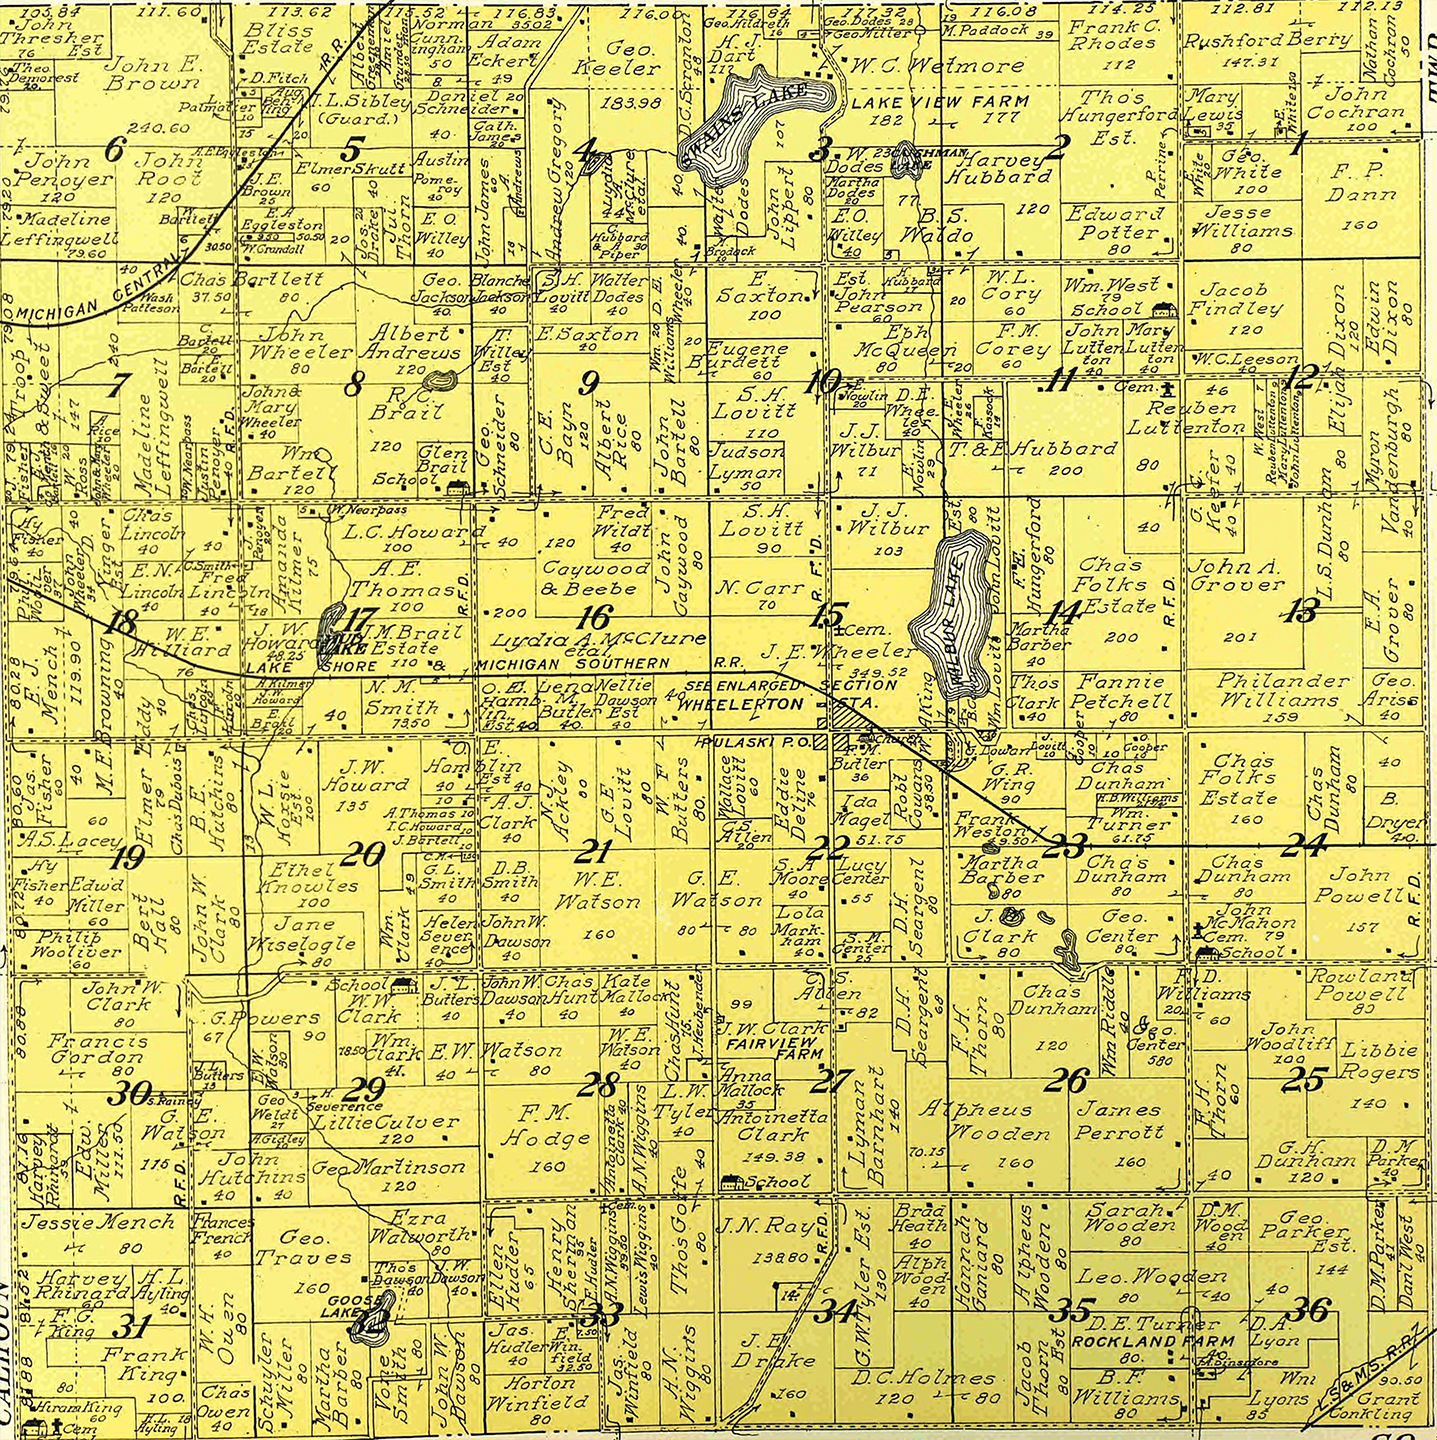 1911 Pulaski Township, Michigan landownership map